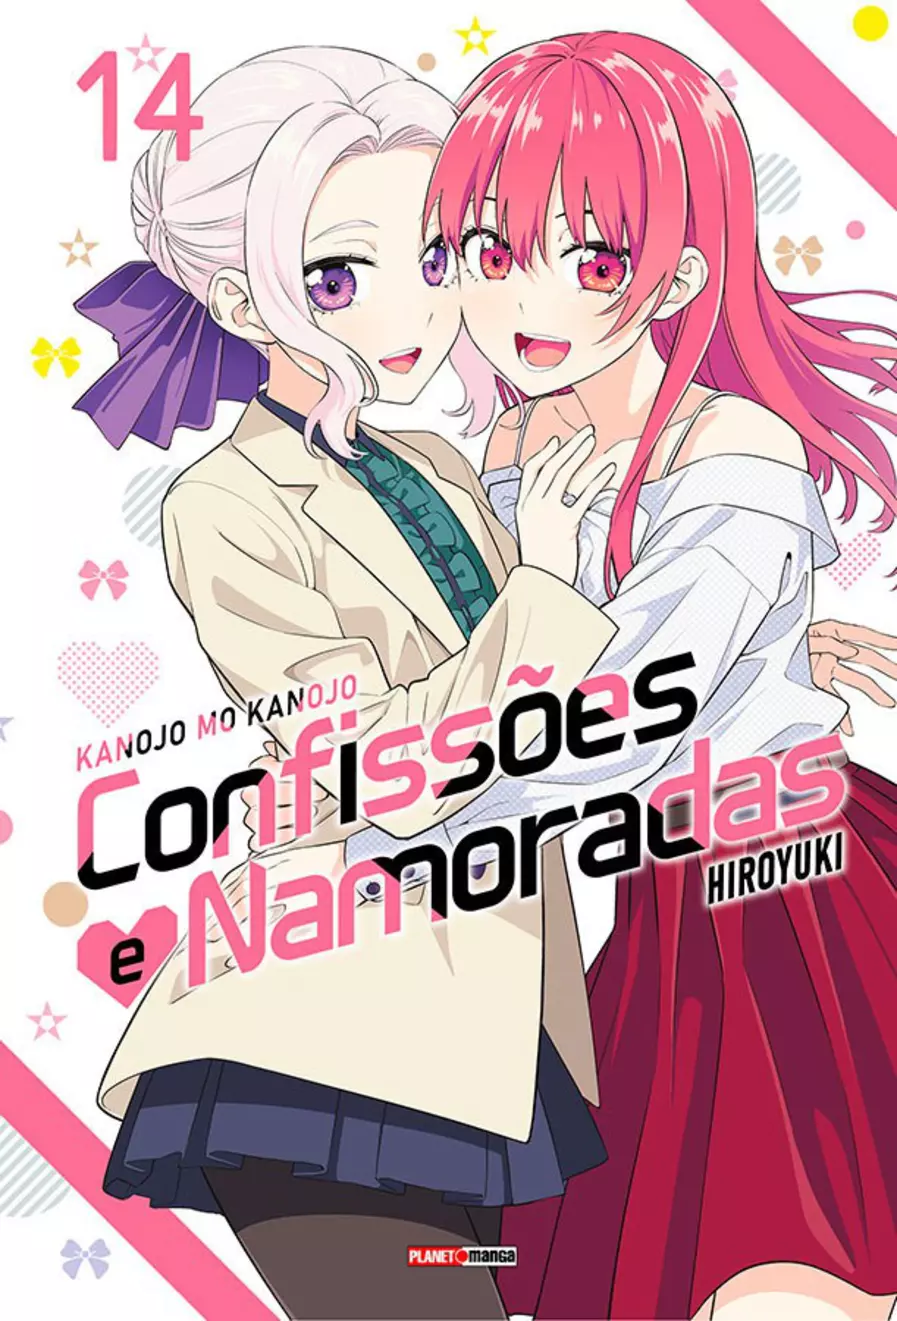 Kanojo Mo Kanojo – Confissões e Namoradas #1 – COMIC BOOM!